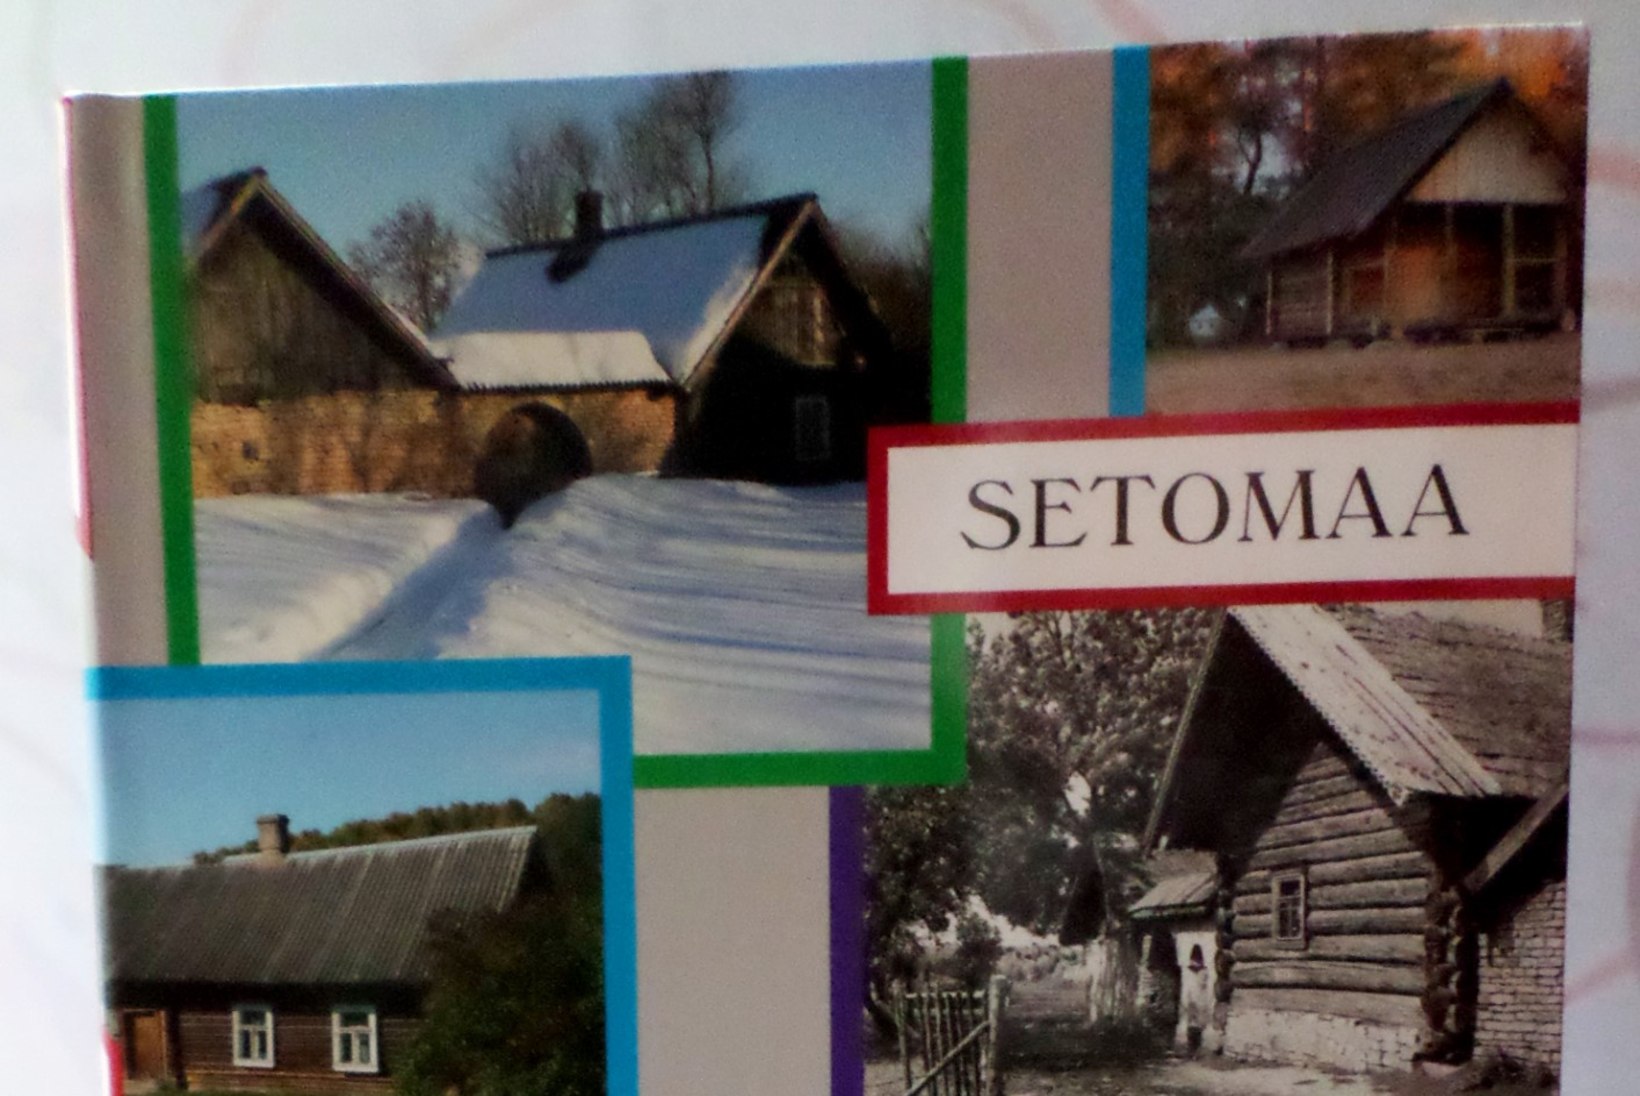 Raamat Setomaa arhitektuurist: hädapärane kaaslane kõigile sealkandis uitajaile